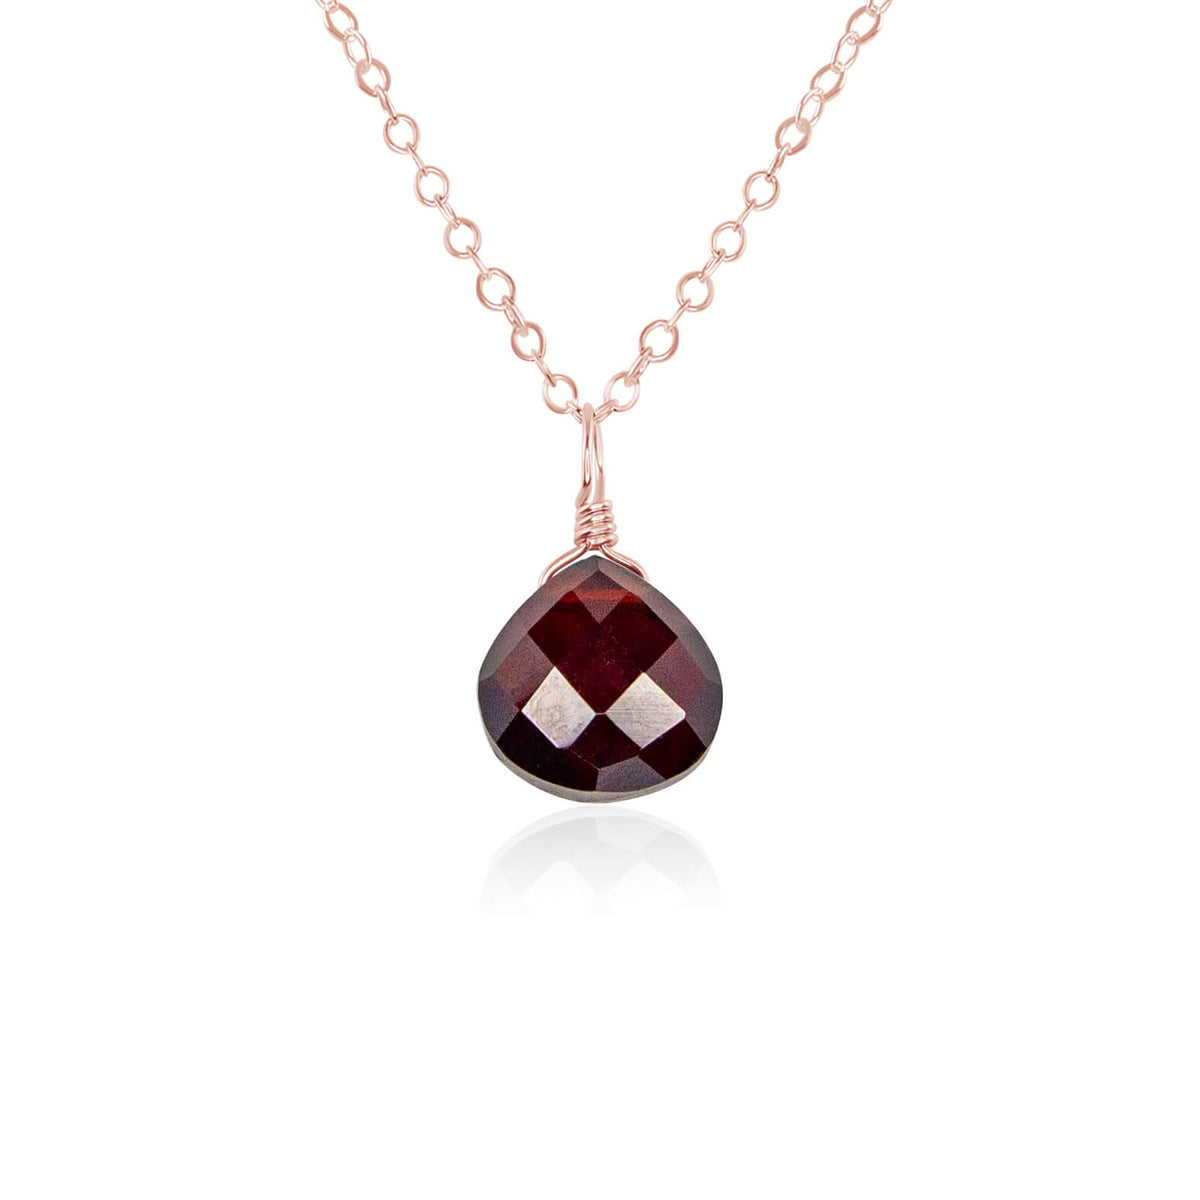 Teardrop Necklace - Garnet - 14K Rose Gold Fill - Luna Tide Handmade Jewellery